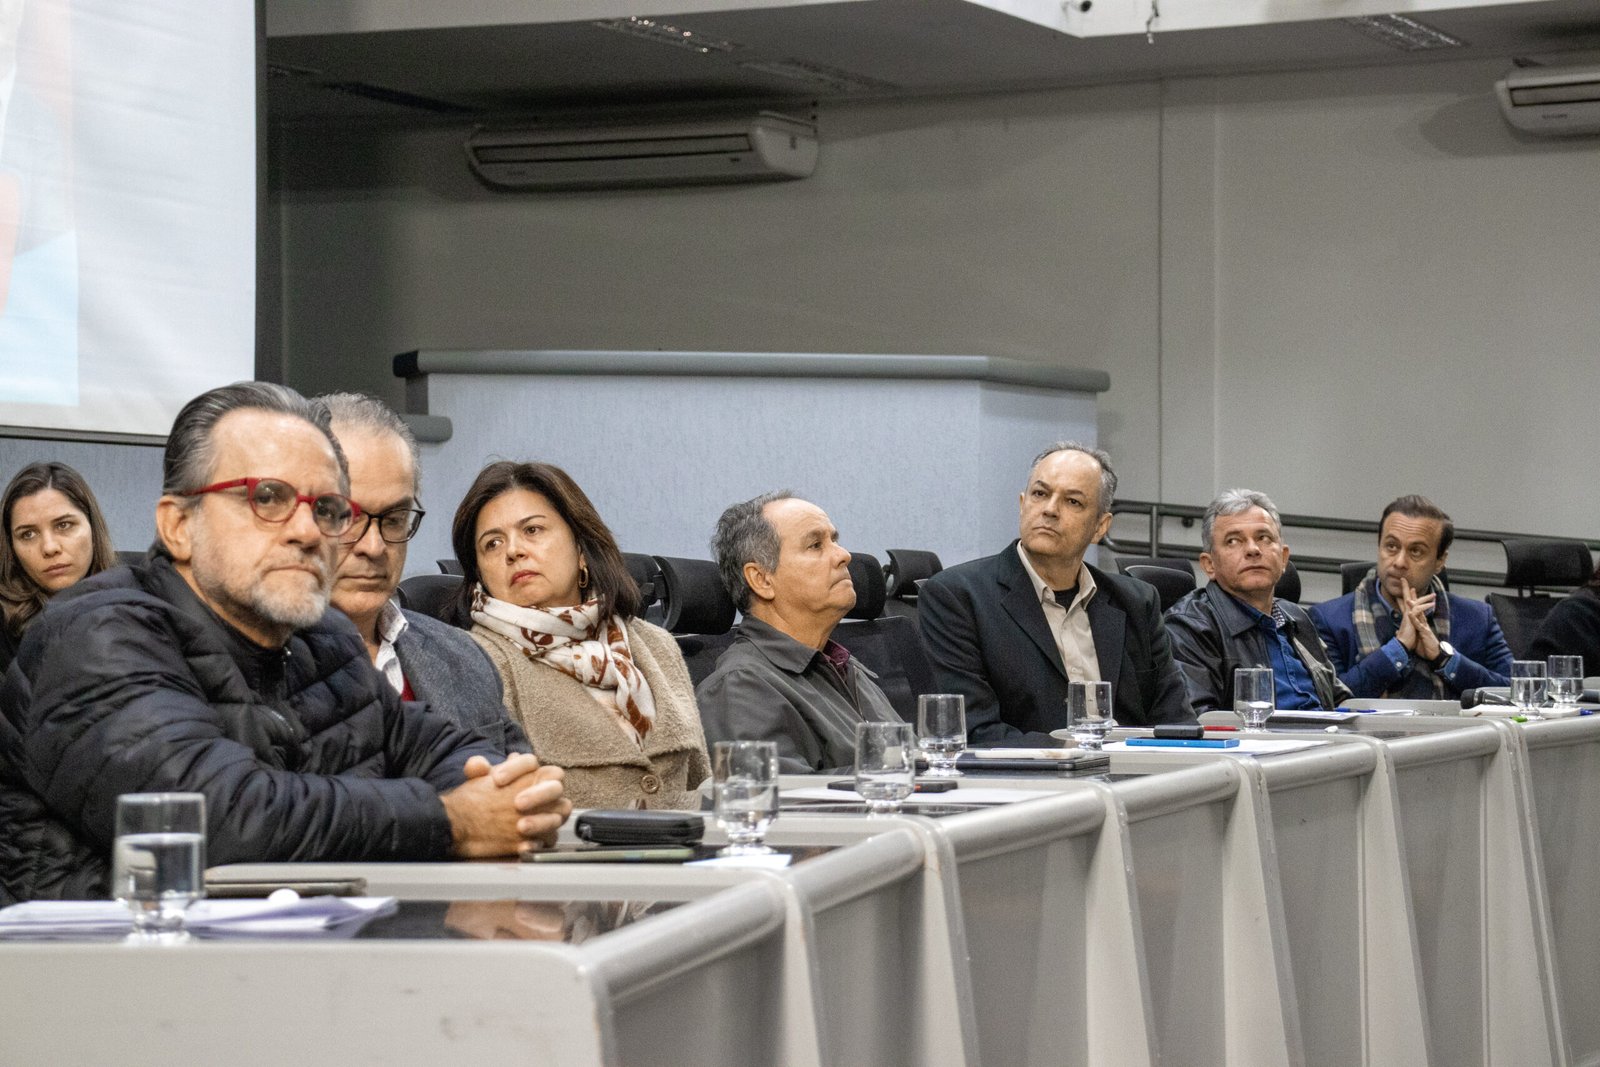 Audiência Pública realizada pelo vereador Prof. André Luis debateu a verticalização no bairro Chácara Cachoeira